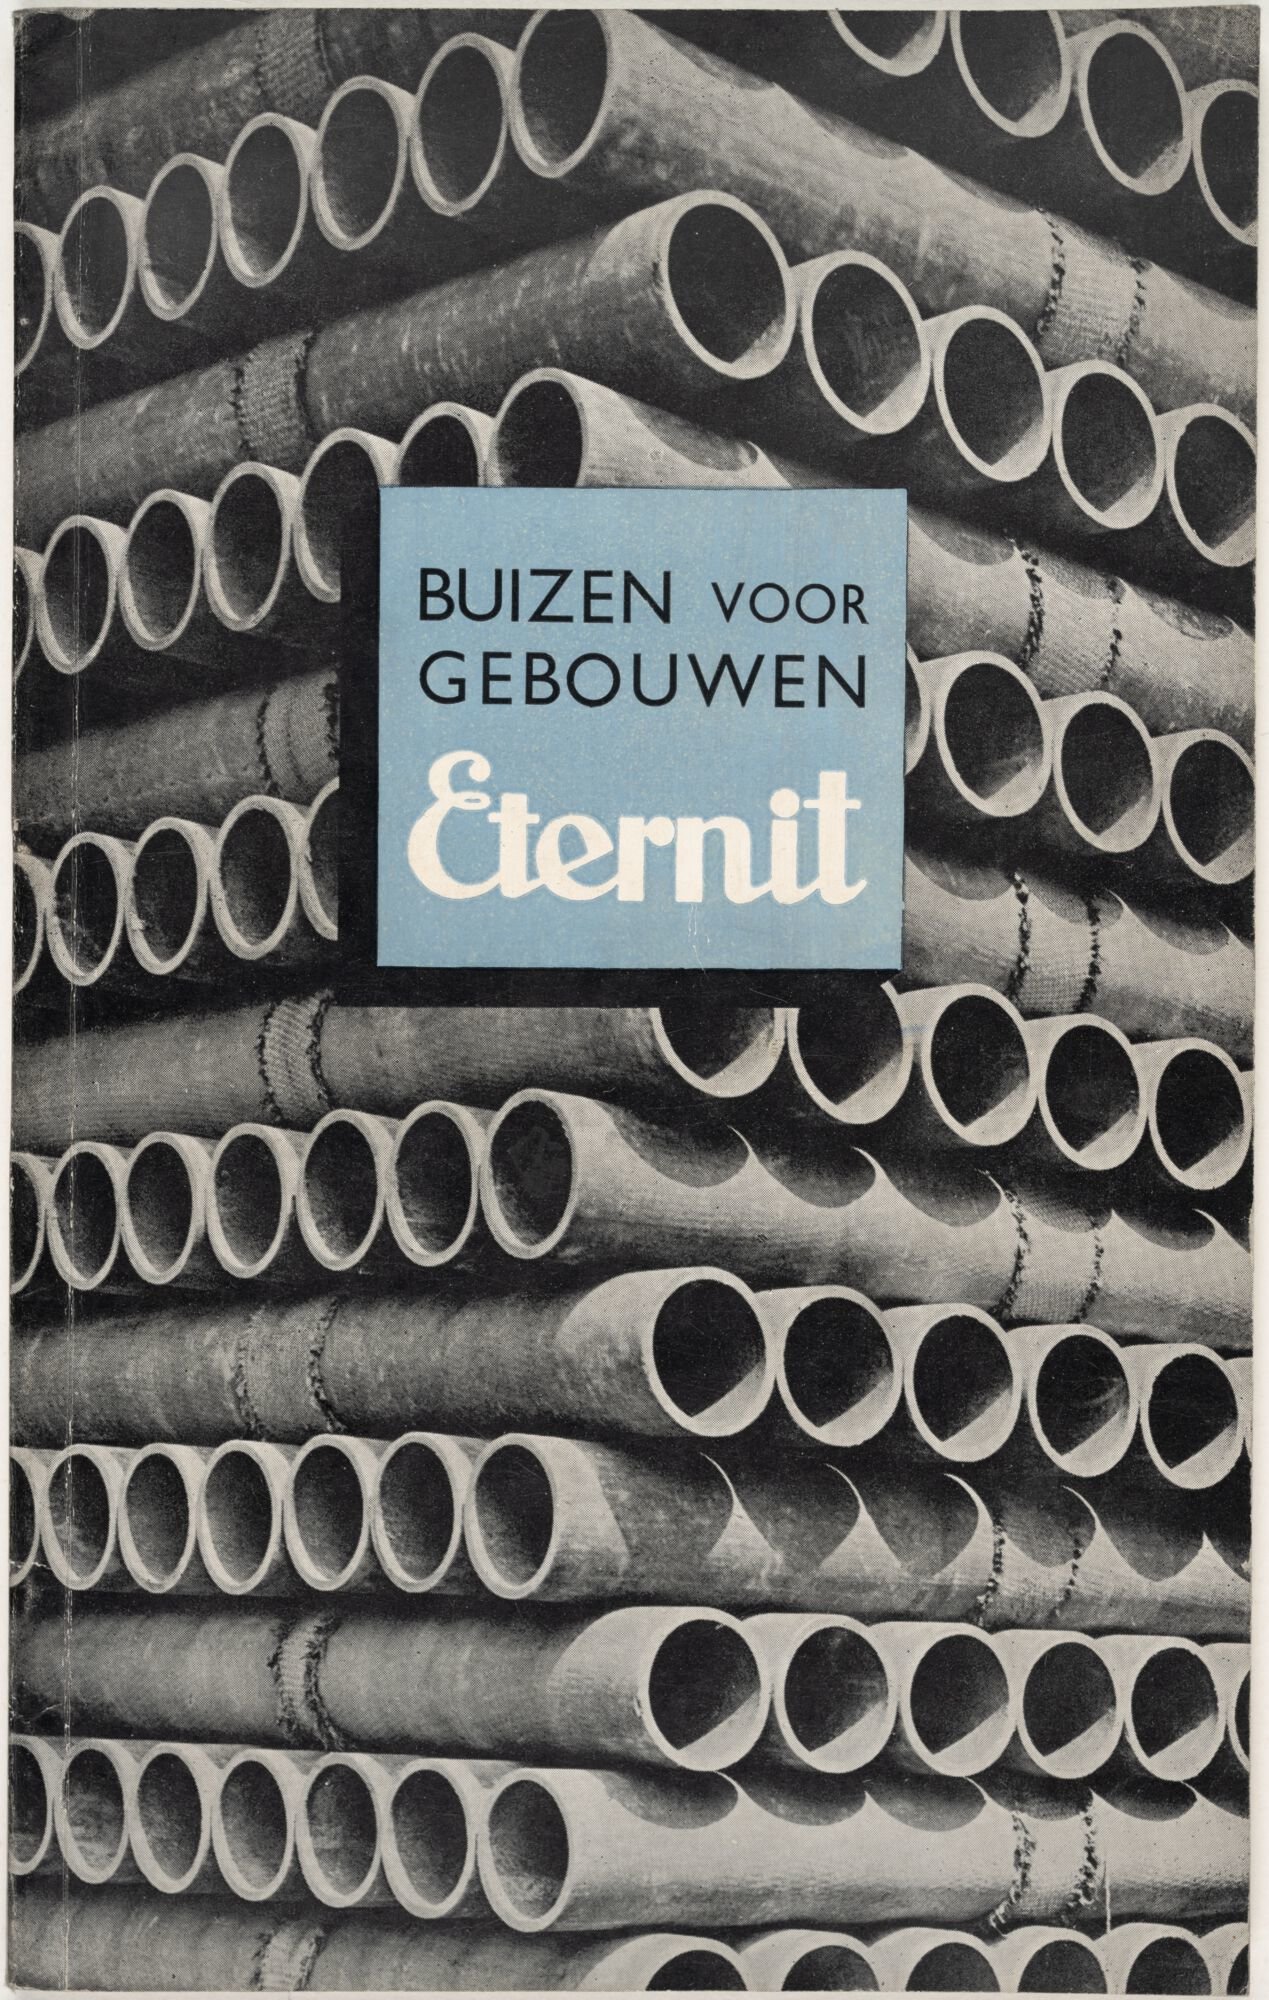 Informatiebrochure over buizen voor gebouwen van het merk Eternit